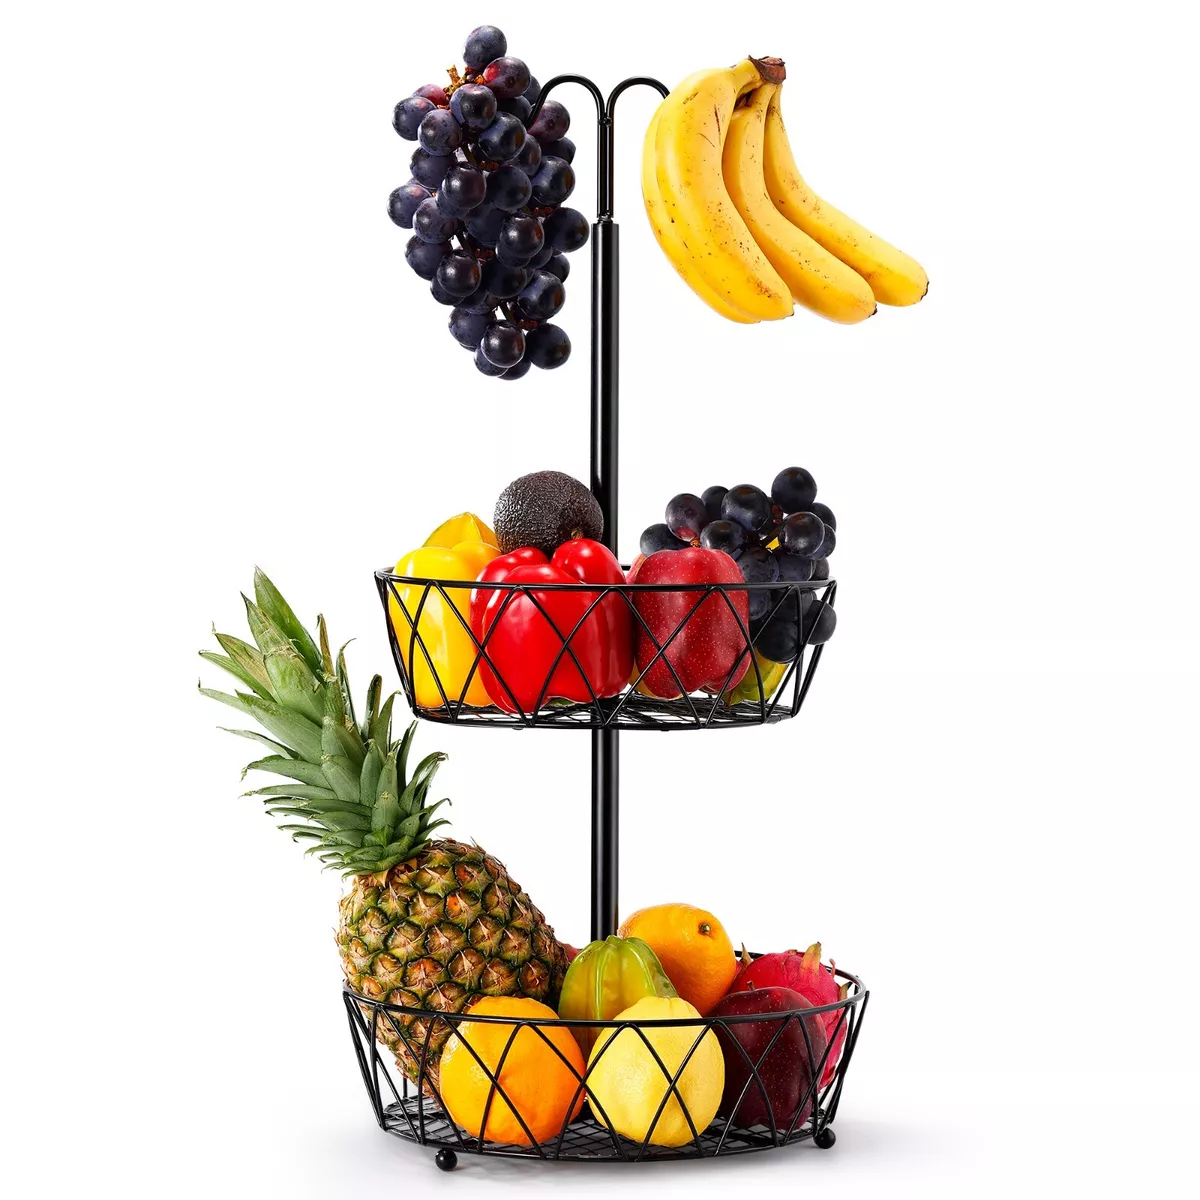 Fruit Basket, 2 Tier Fruit Basket Bowl Vegetable Organizer for Kitchen